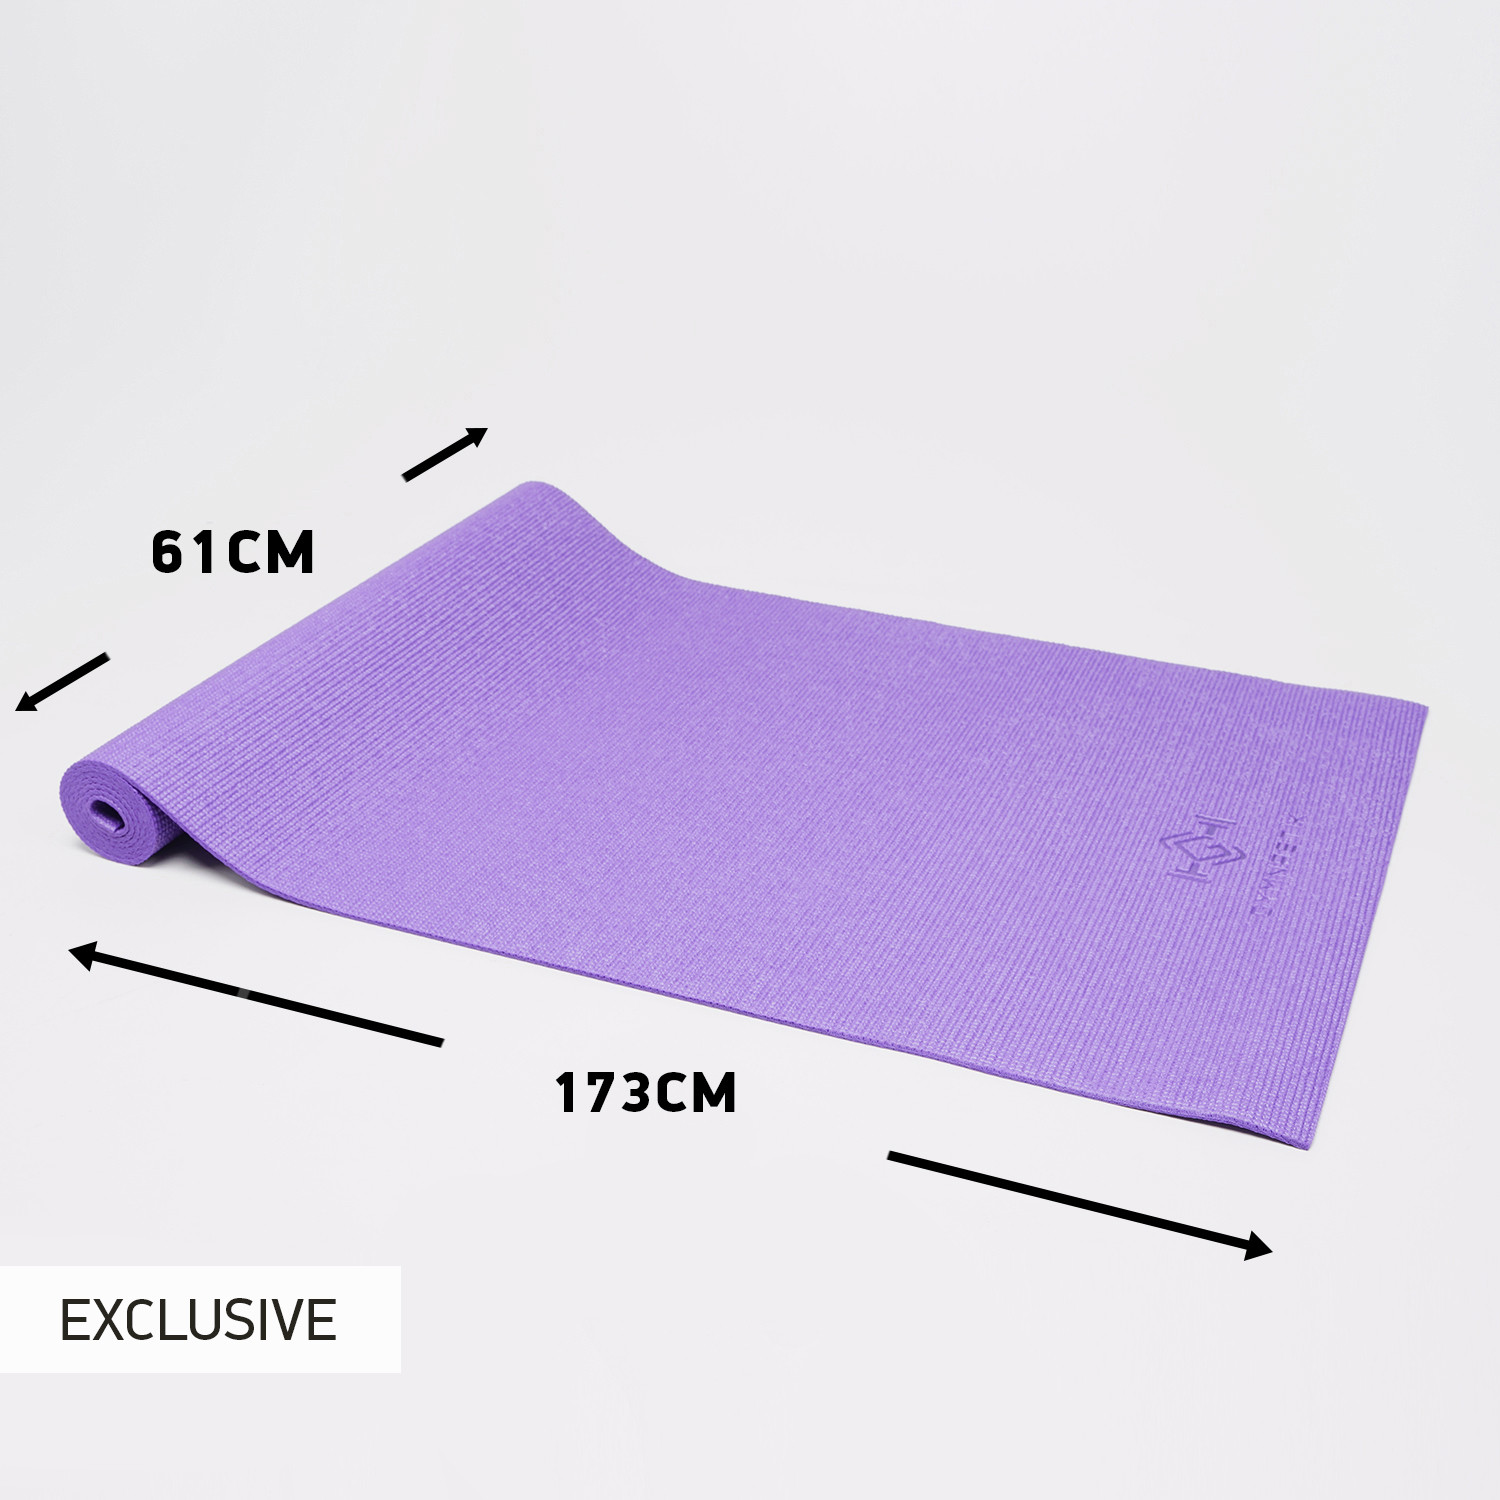 GYMNASTIK PVC Î£Ï„ÏÏŽÎ¼Î± Yoga 173 x 61 x 0,4 cm (9000091582_3149)